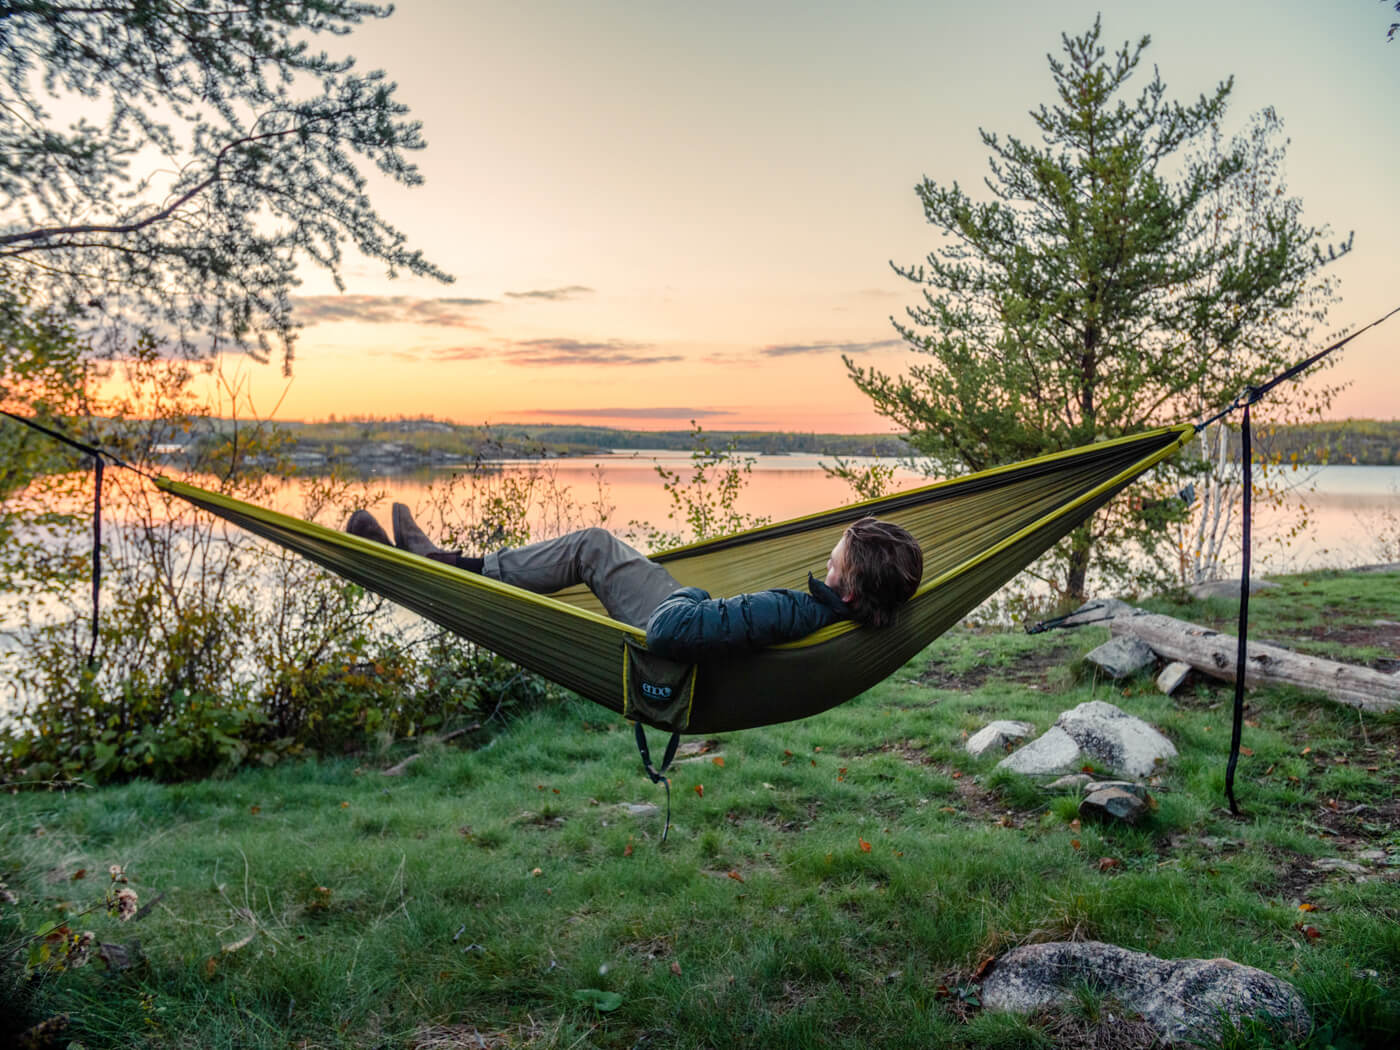 A man lays in a hammock near a lake at sunset. 